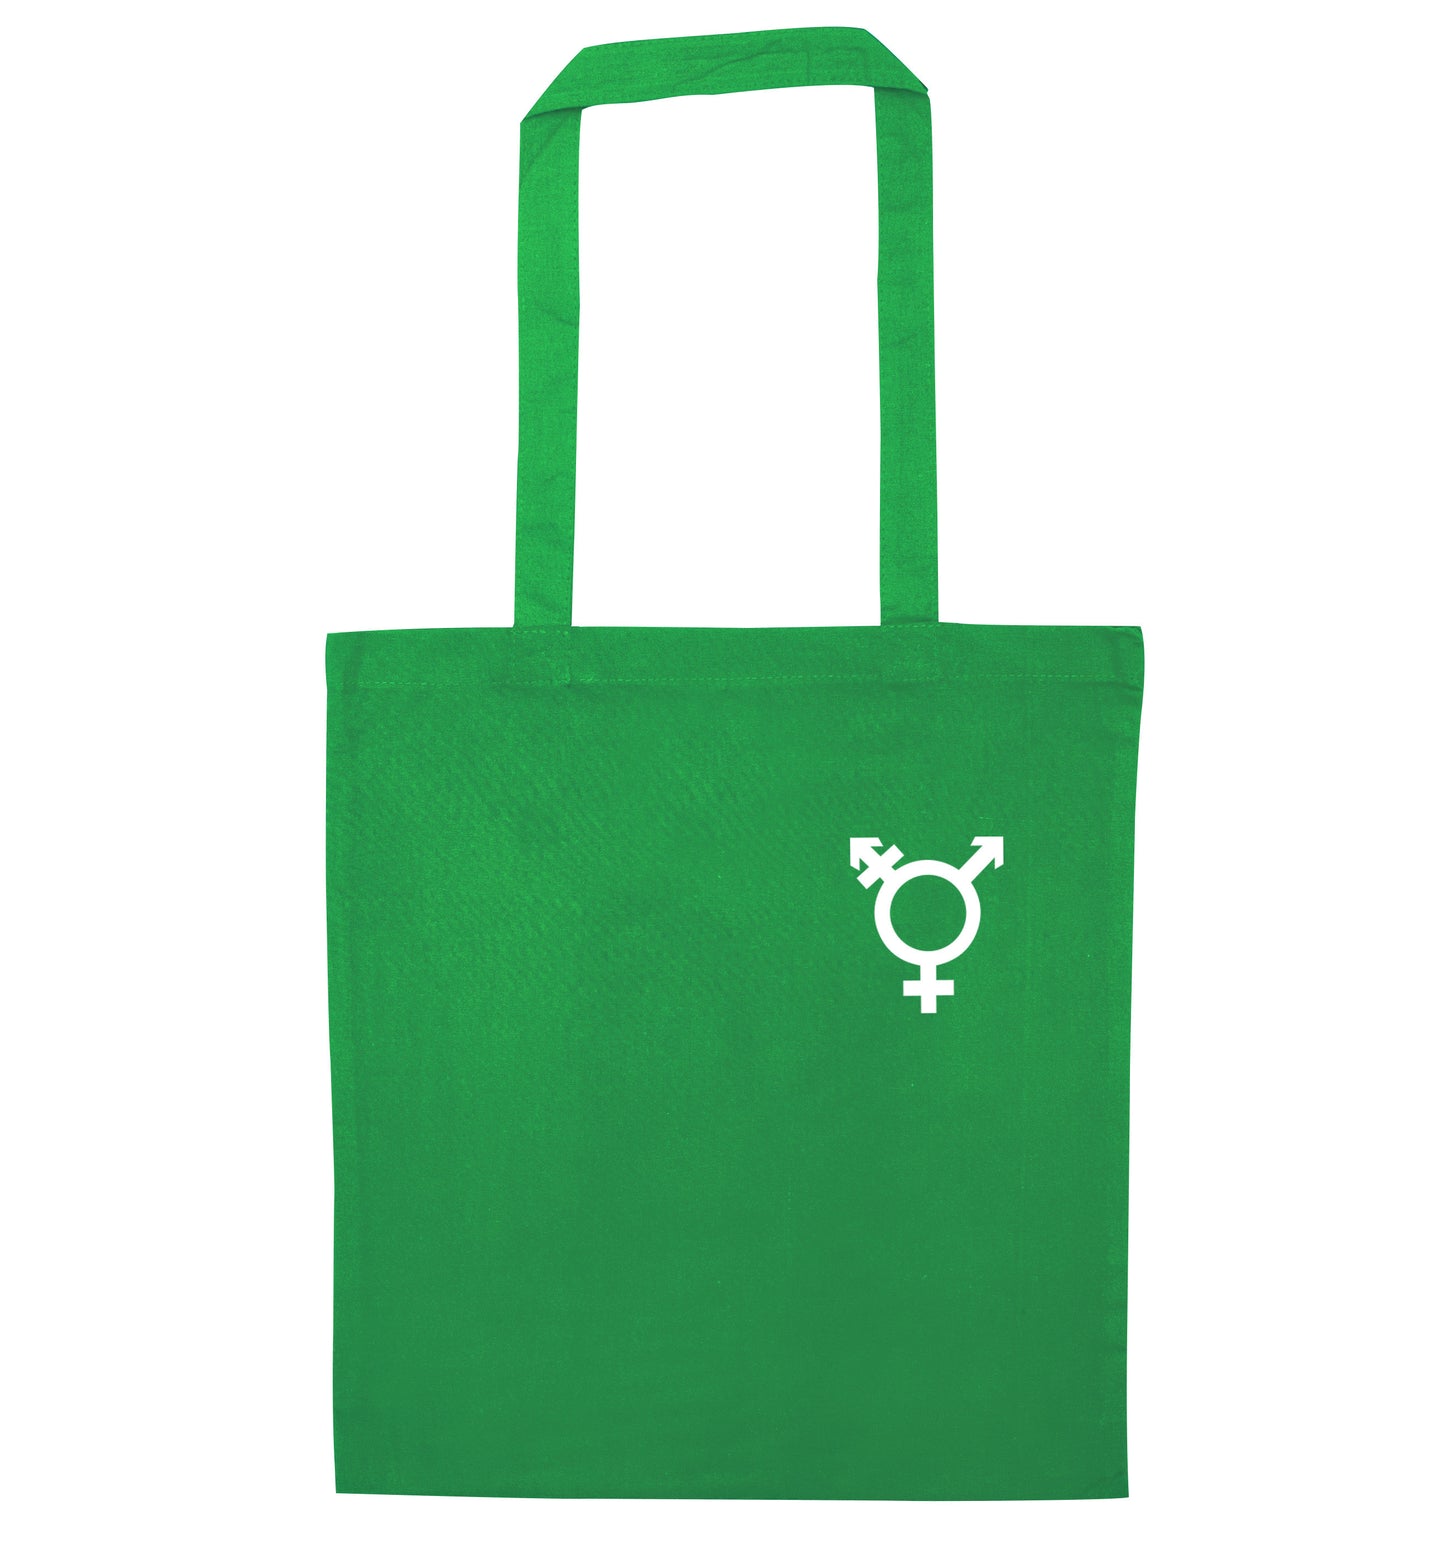 Trans gender symbol pocket green tote bag